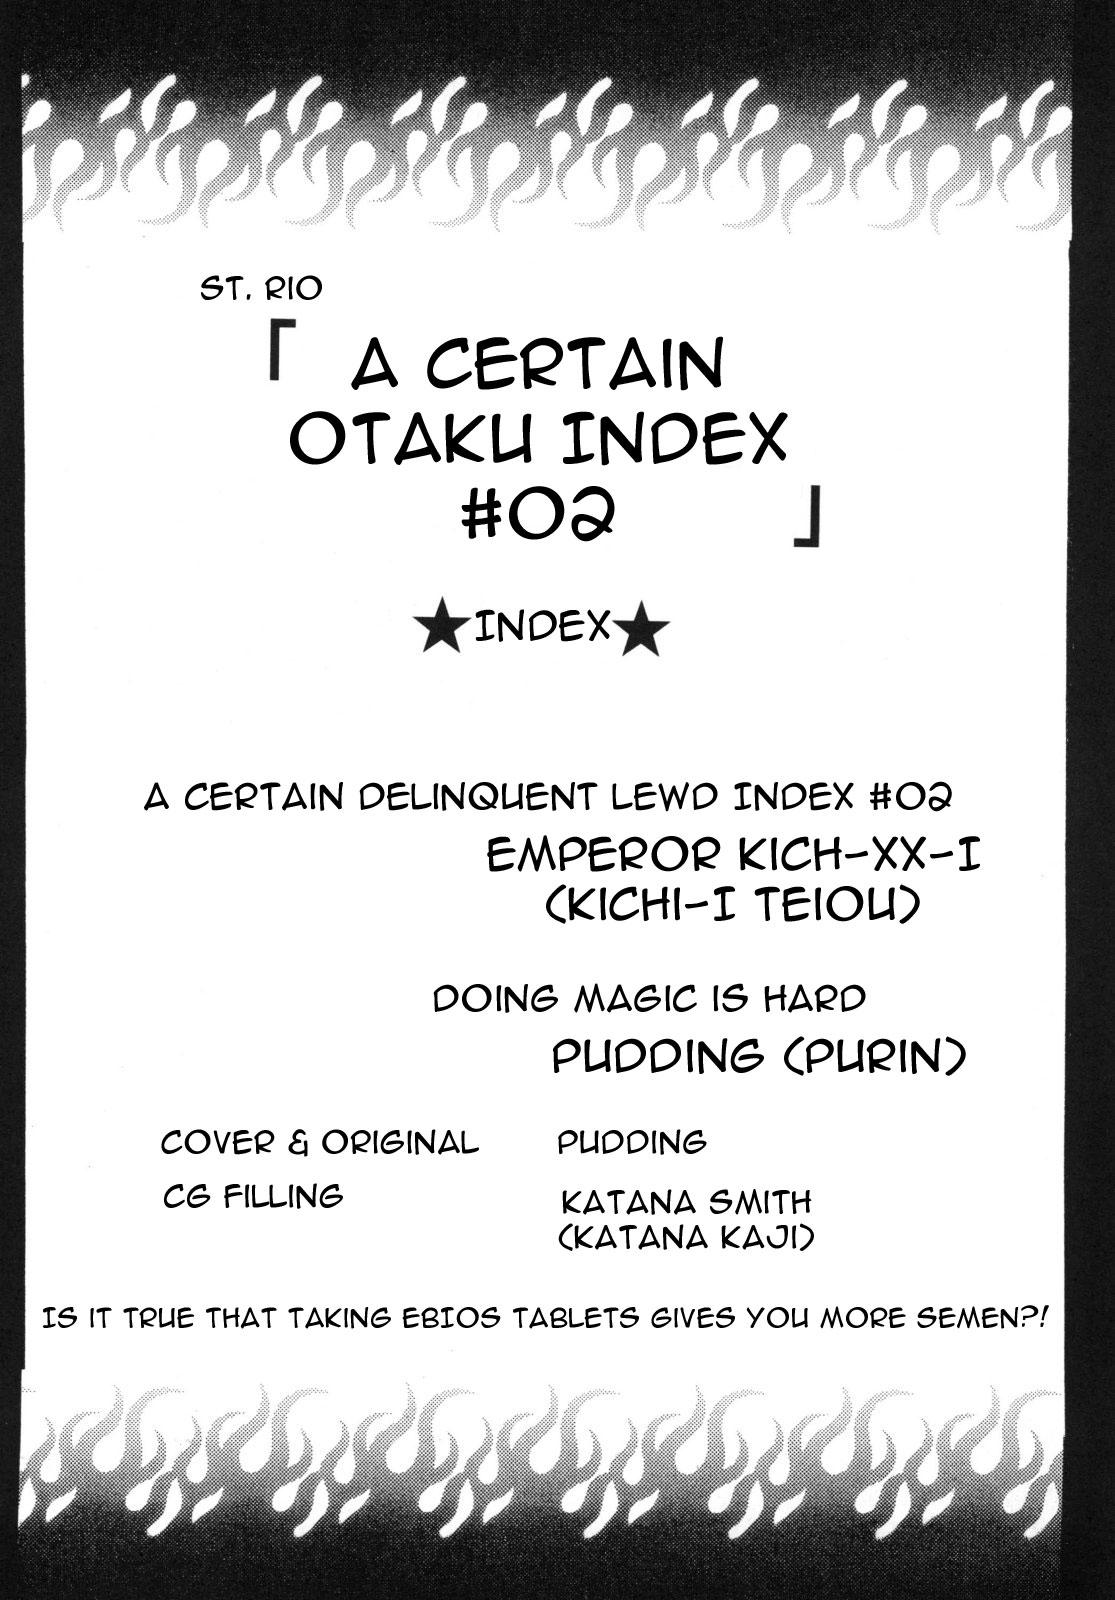 Toaru Otaku no Index #2 | A Certain Magical Lewd Index #2 3